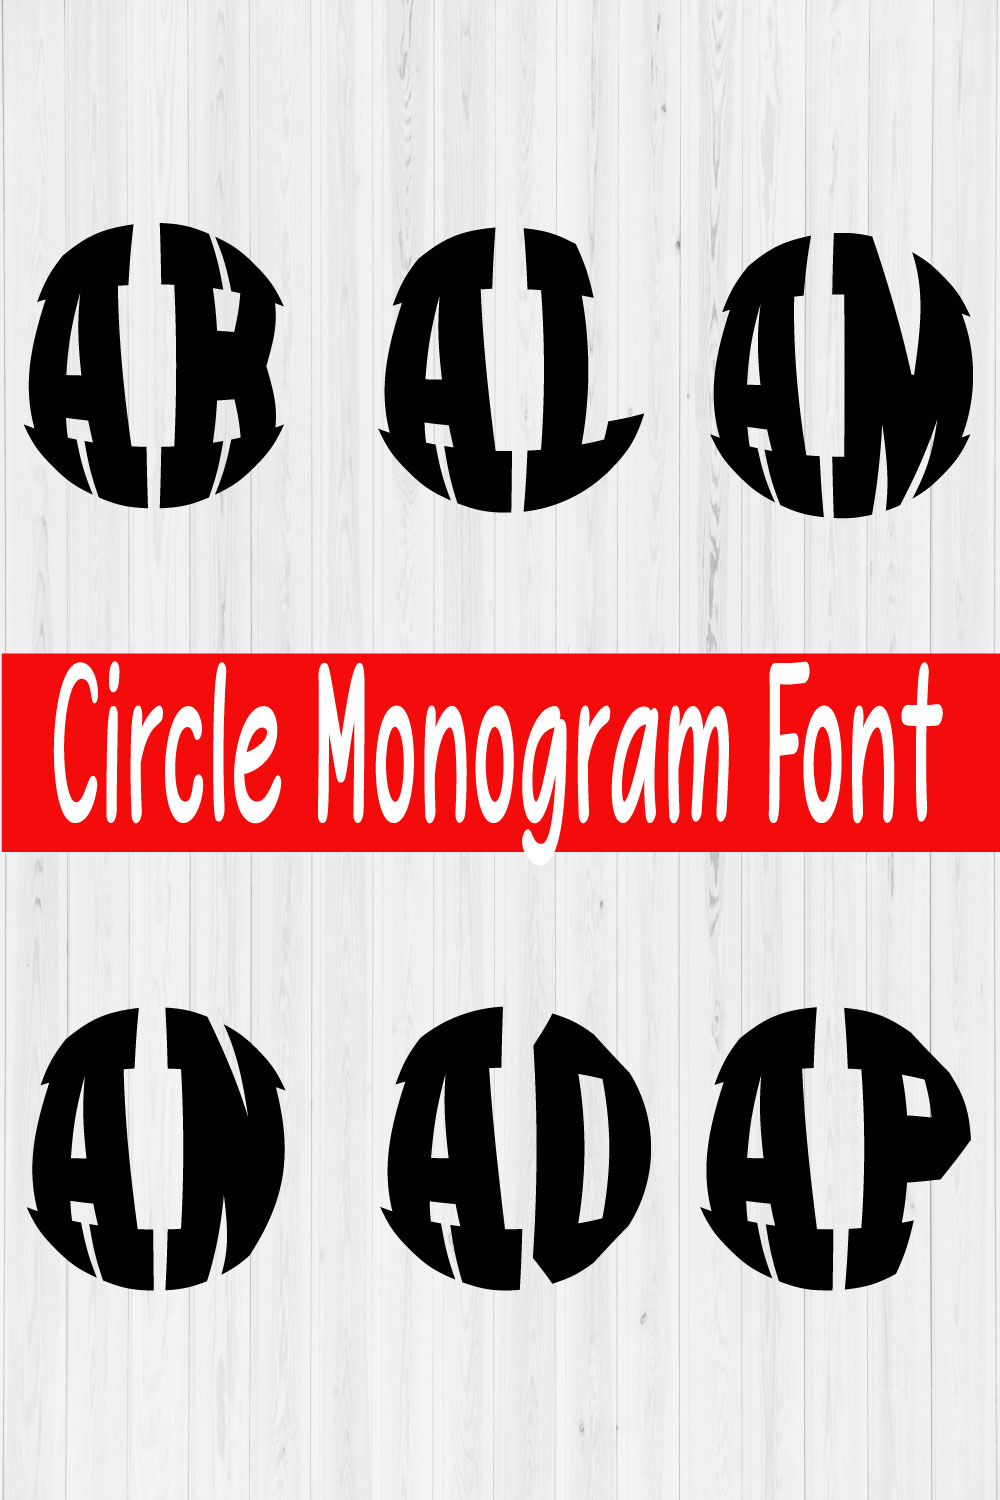 Monogram Font Vol7 pinterest preview image.